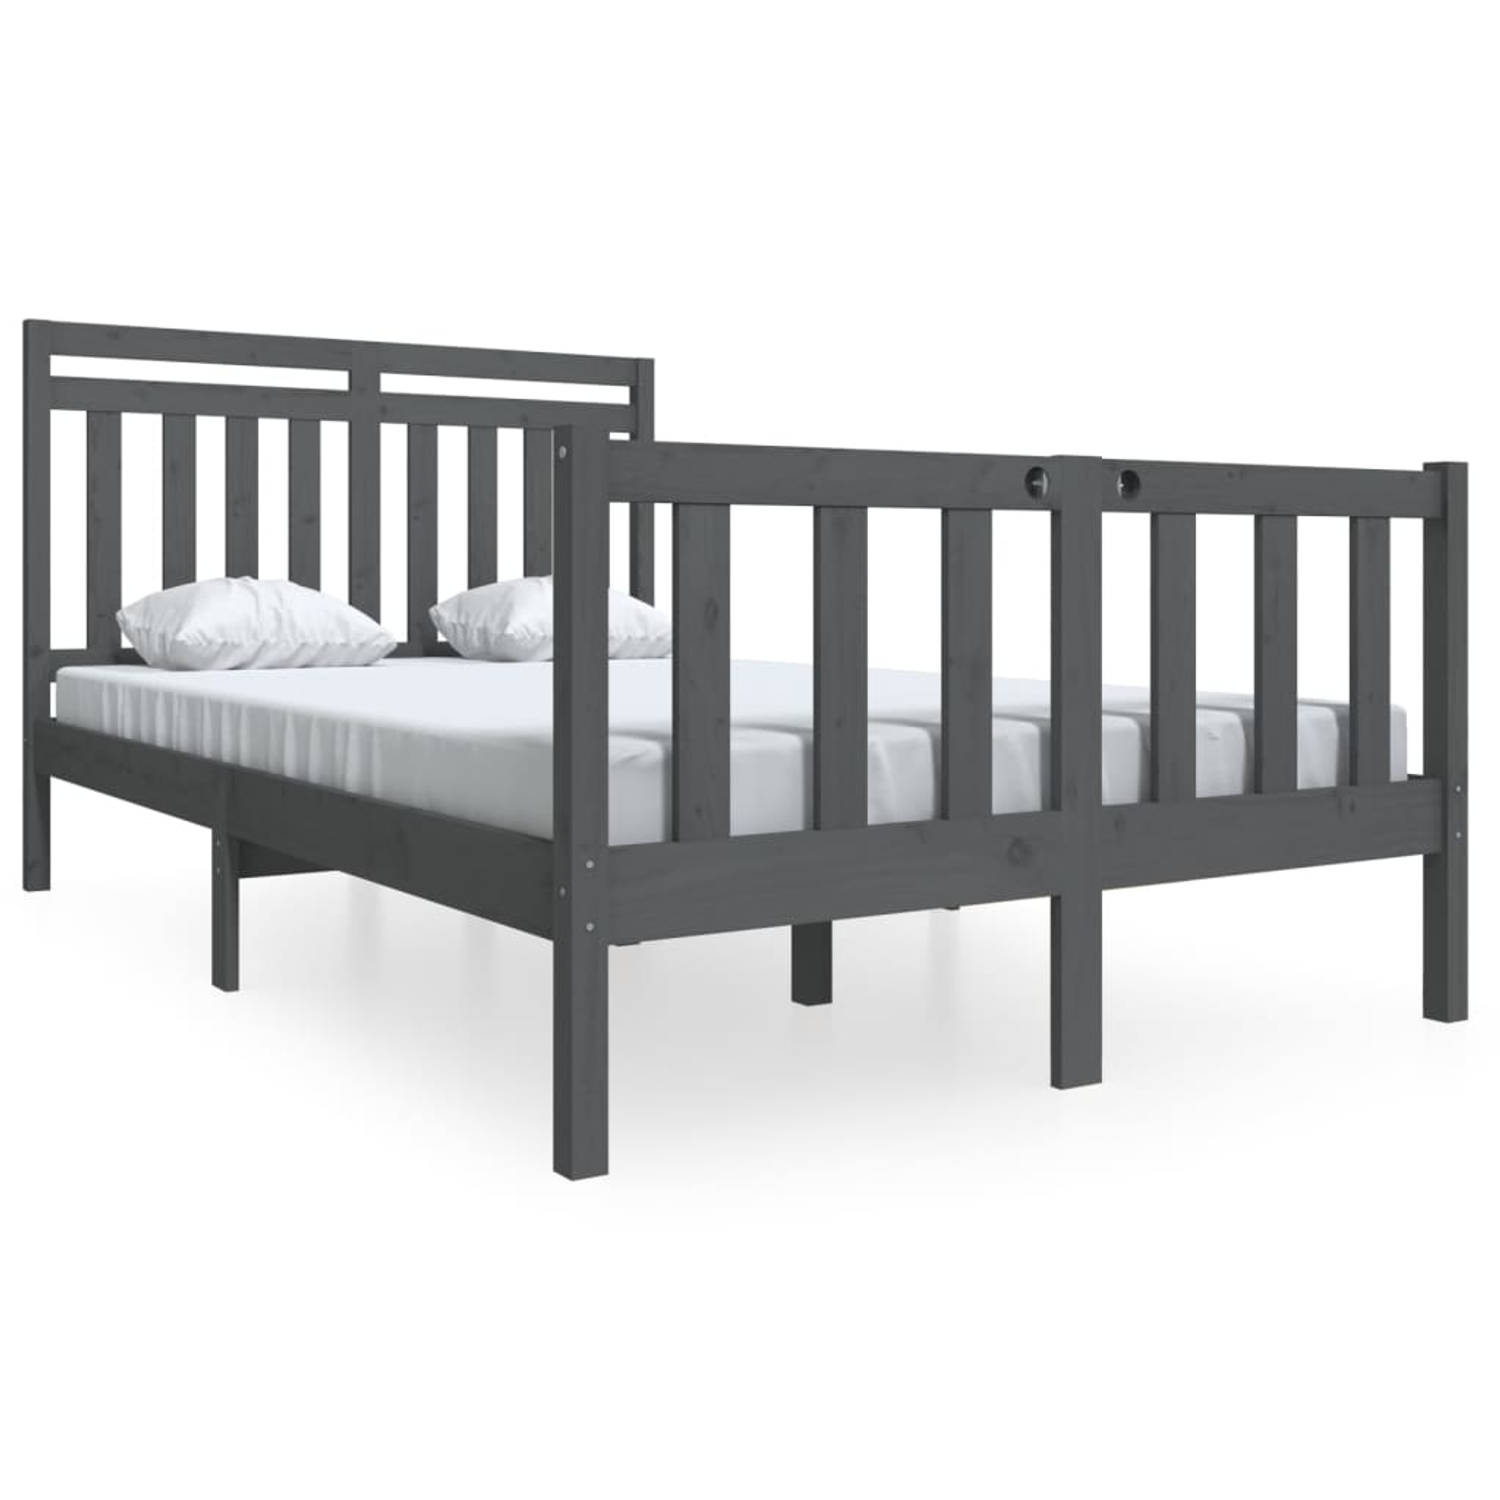 The Living Store Bedframe massief hout grijs 140x190 cm - Bedframe - Bedframes - Tweepersoonsbed - Bed - Bedombouw - Dubbel Bed - Frame - Bed Frame - Ledikant - Bedframe Met Hoofde